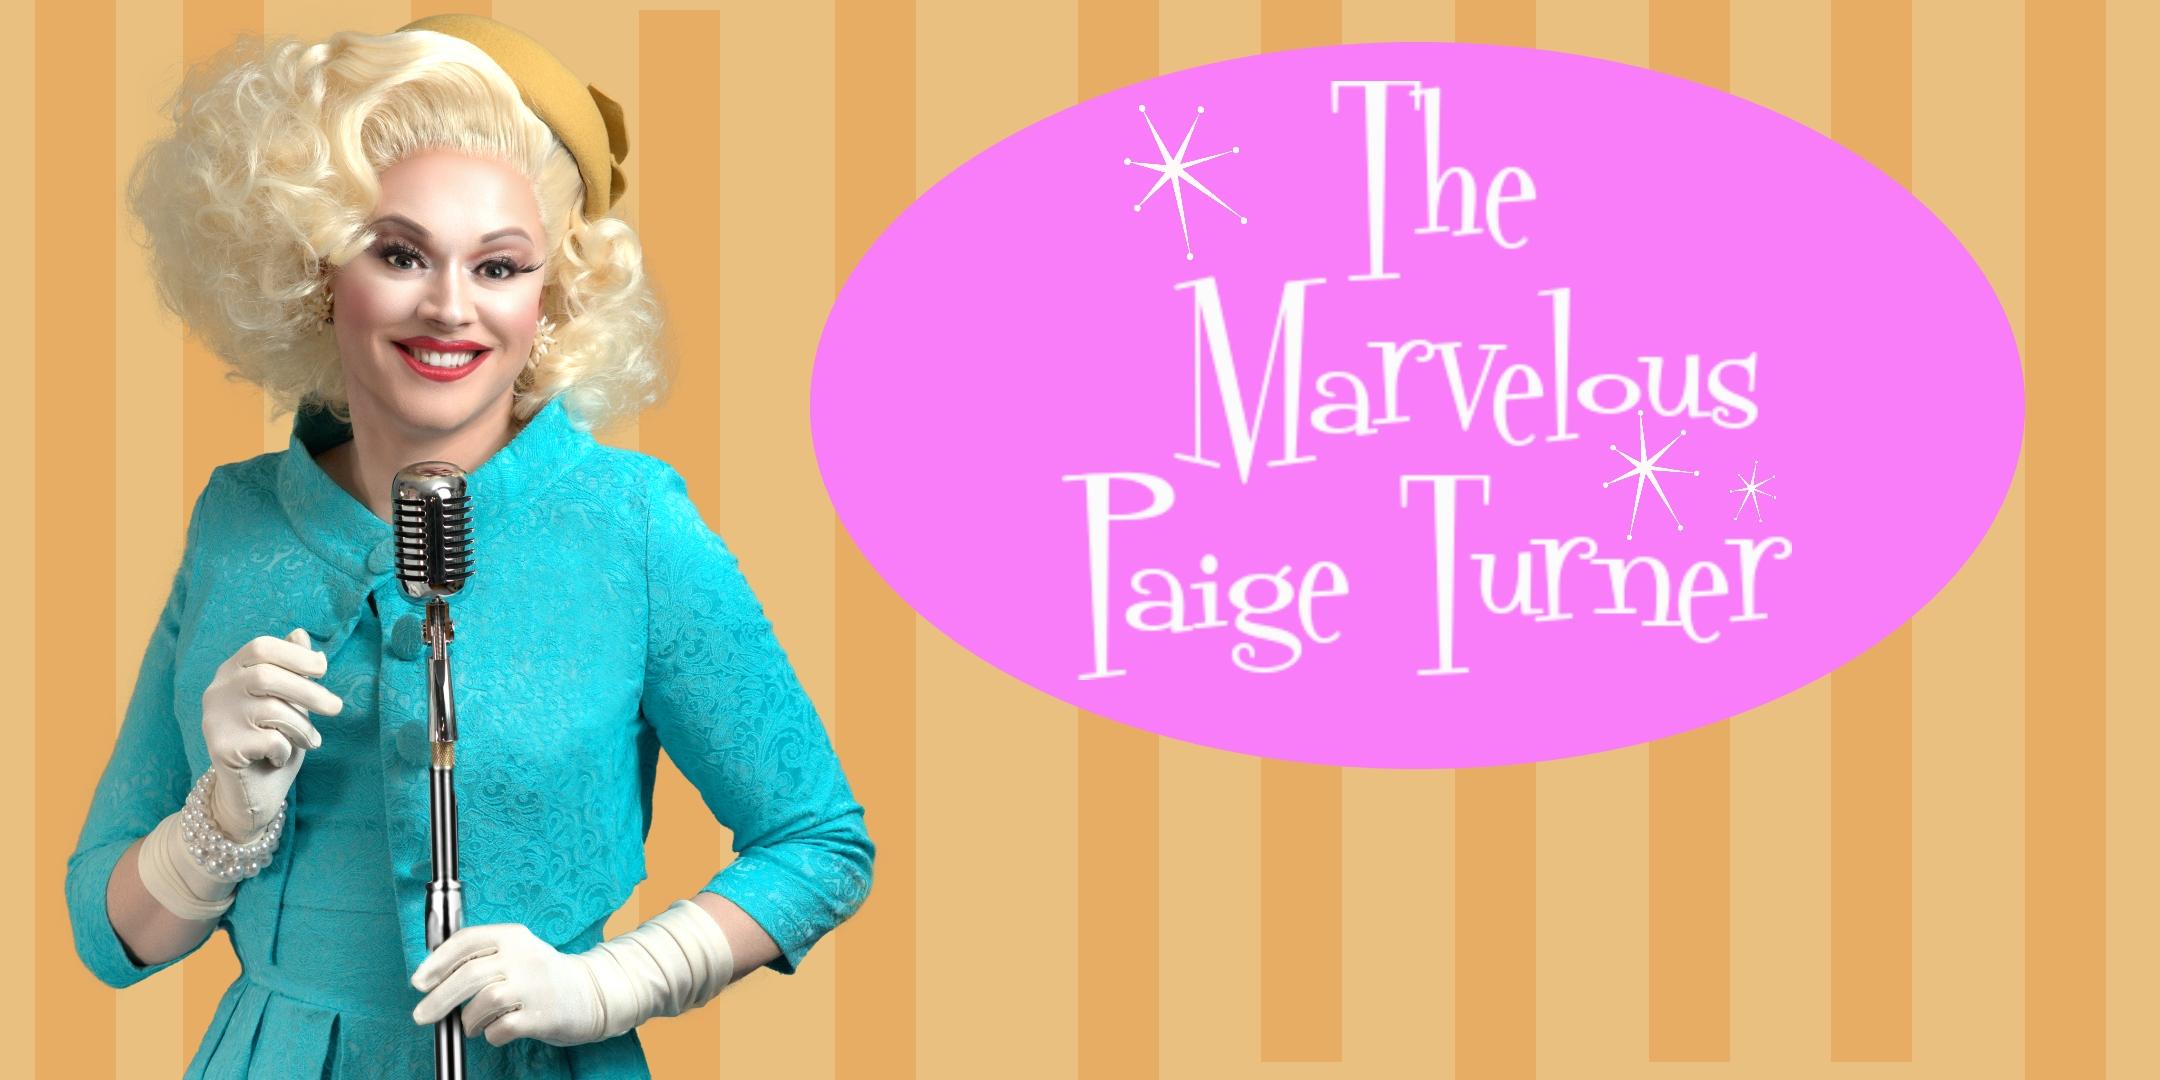 The Marvelous Paige Turner